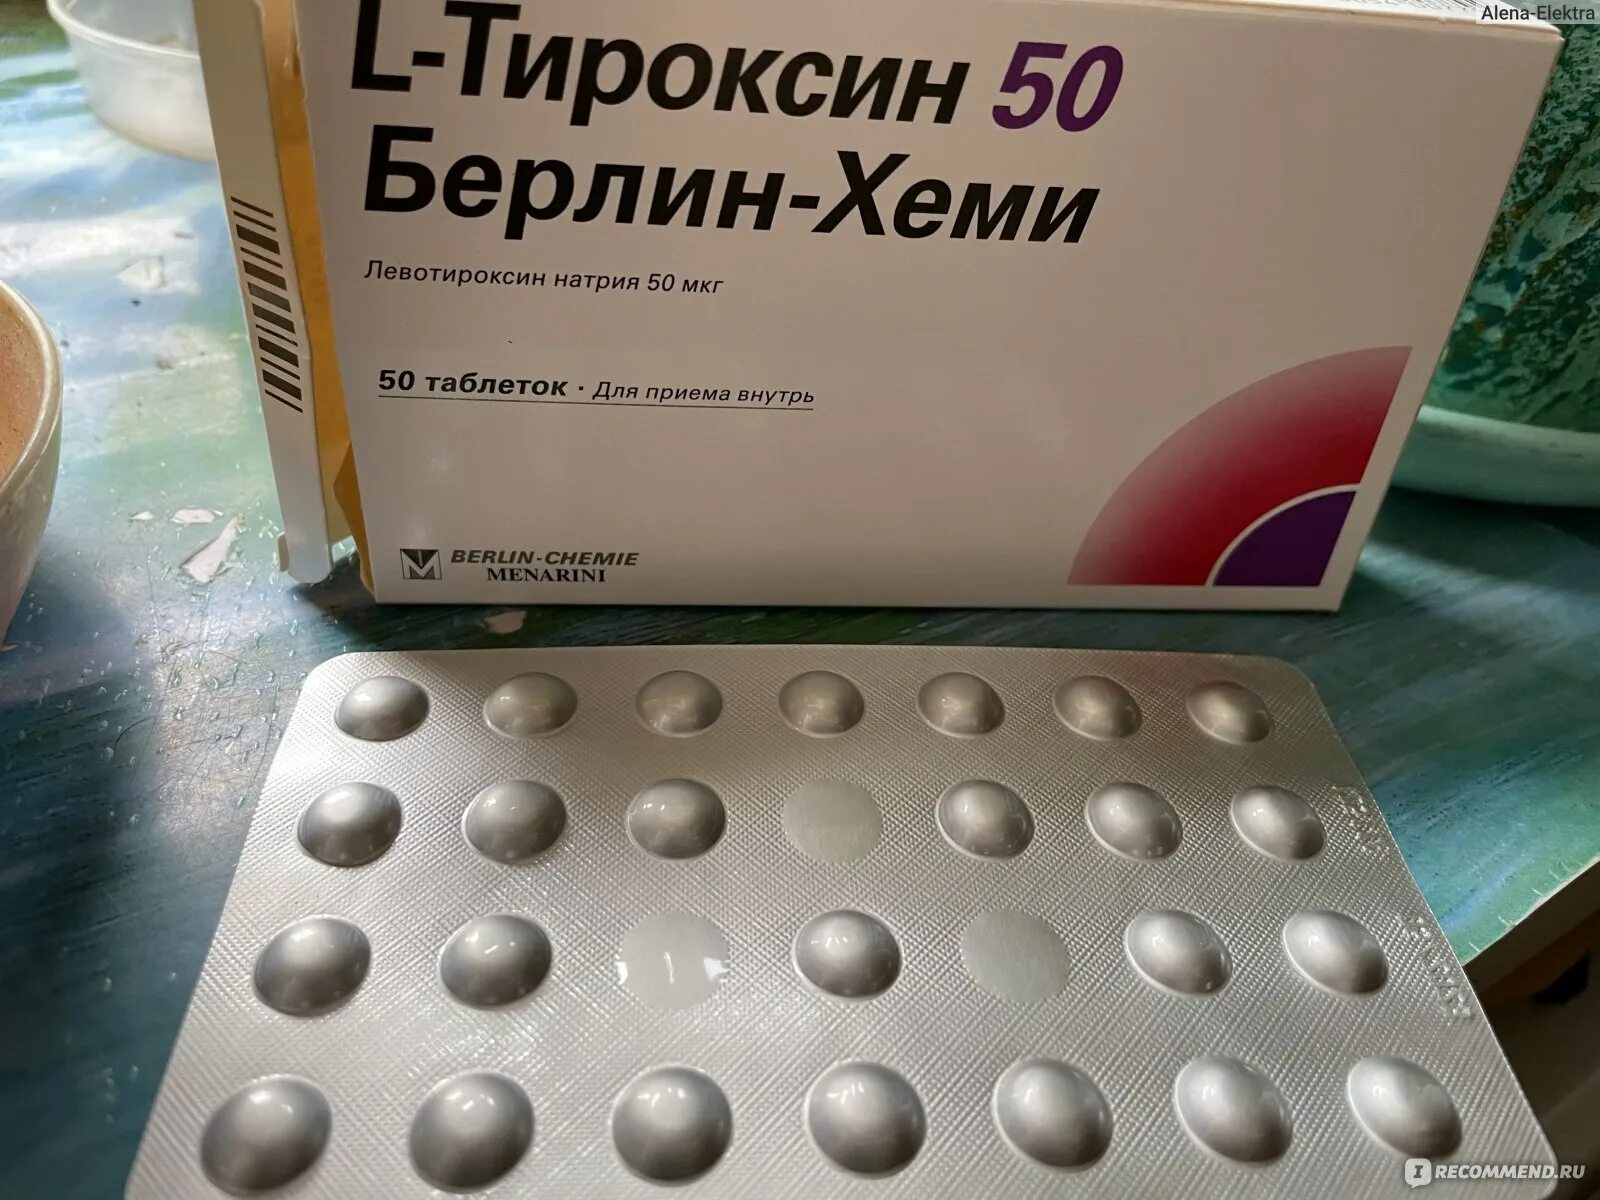 Тироксин отзывы врачей. L-тироксин таблетки. Л тироксин от похудения. L тироксин 25. Дешевый антибиотик гормональный.